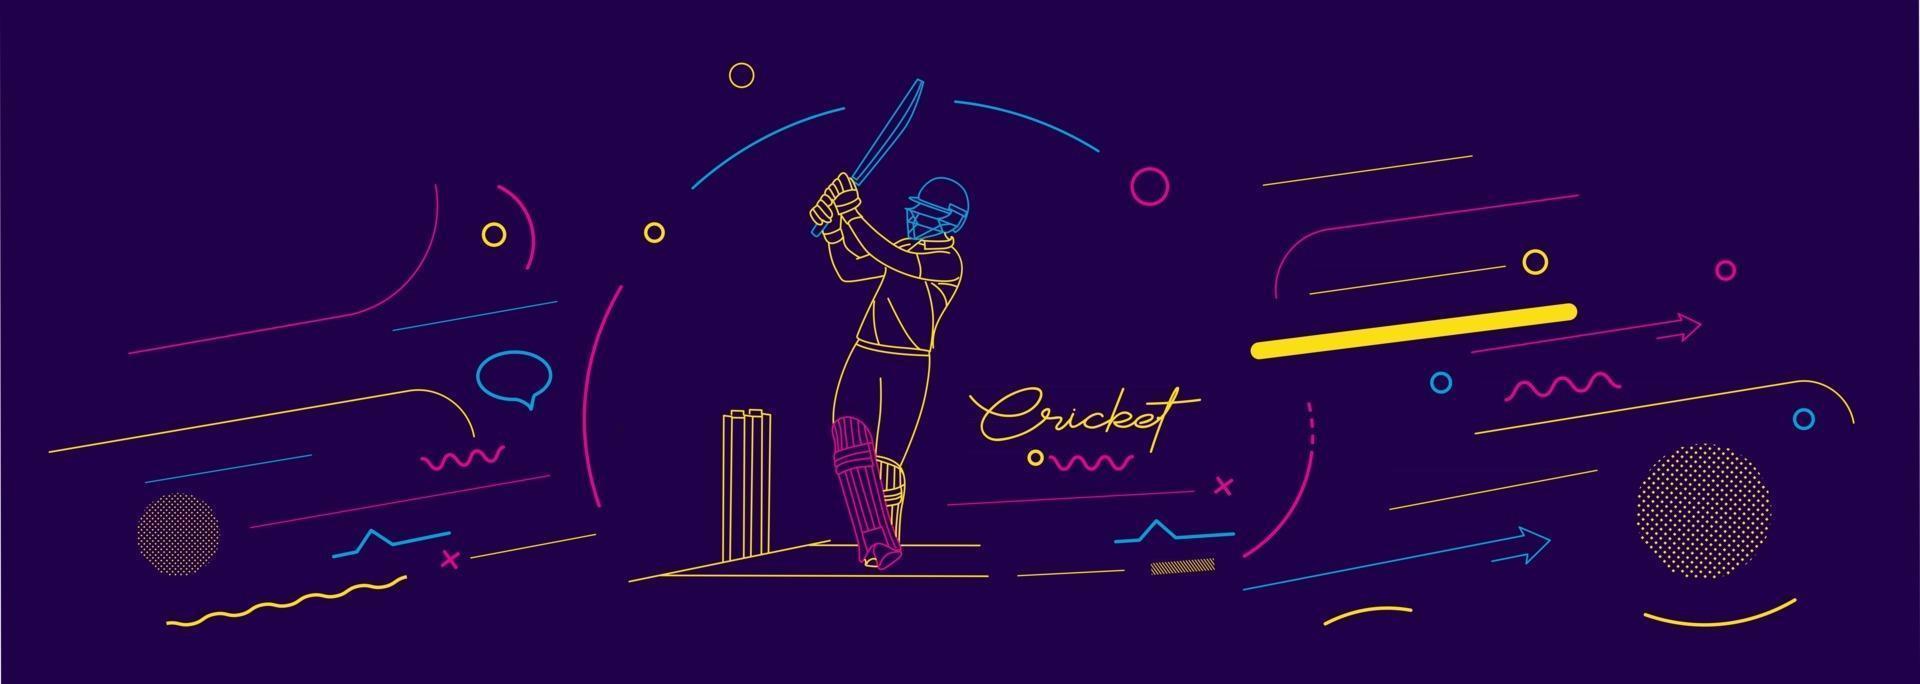 cricket banner kampioenschap achtergrond poster sjabloon flyer banner vector